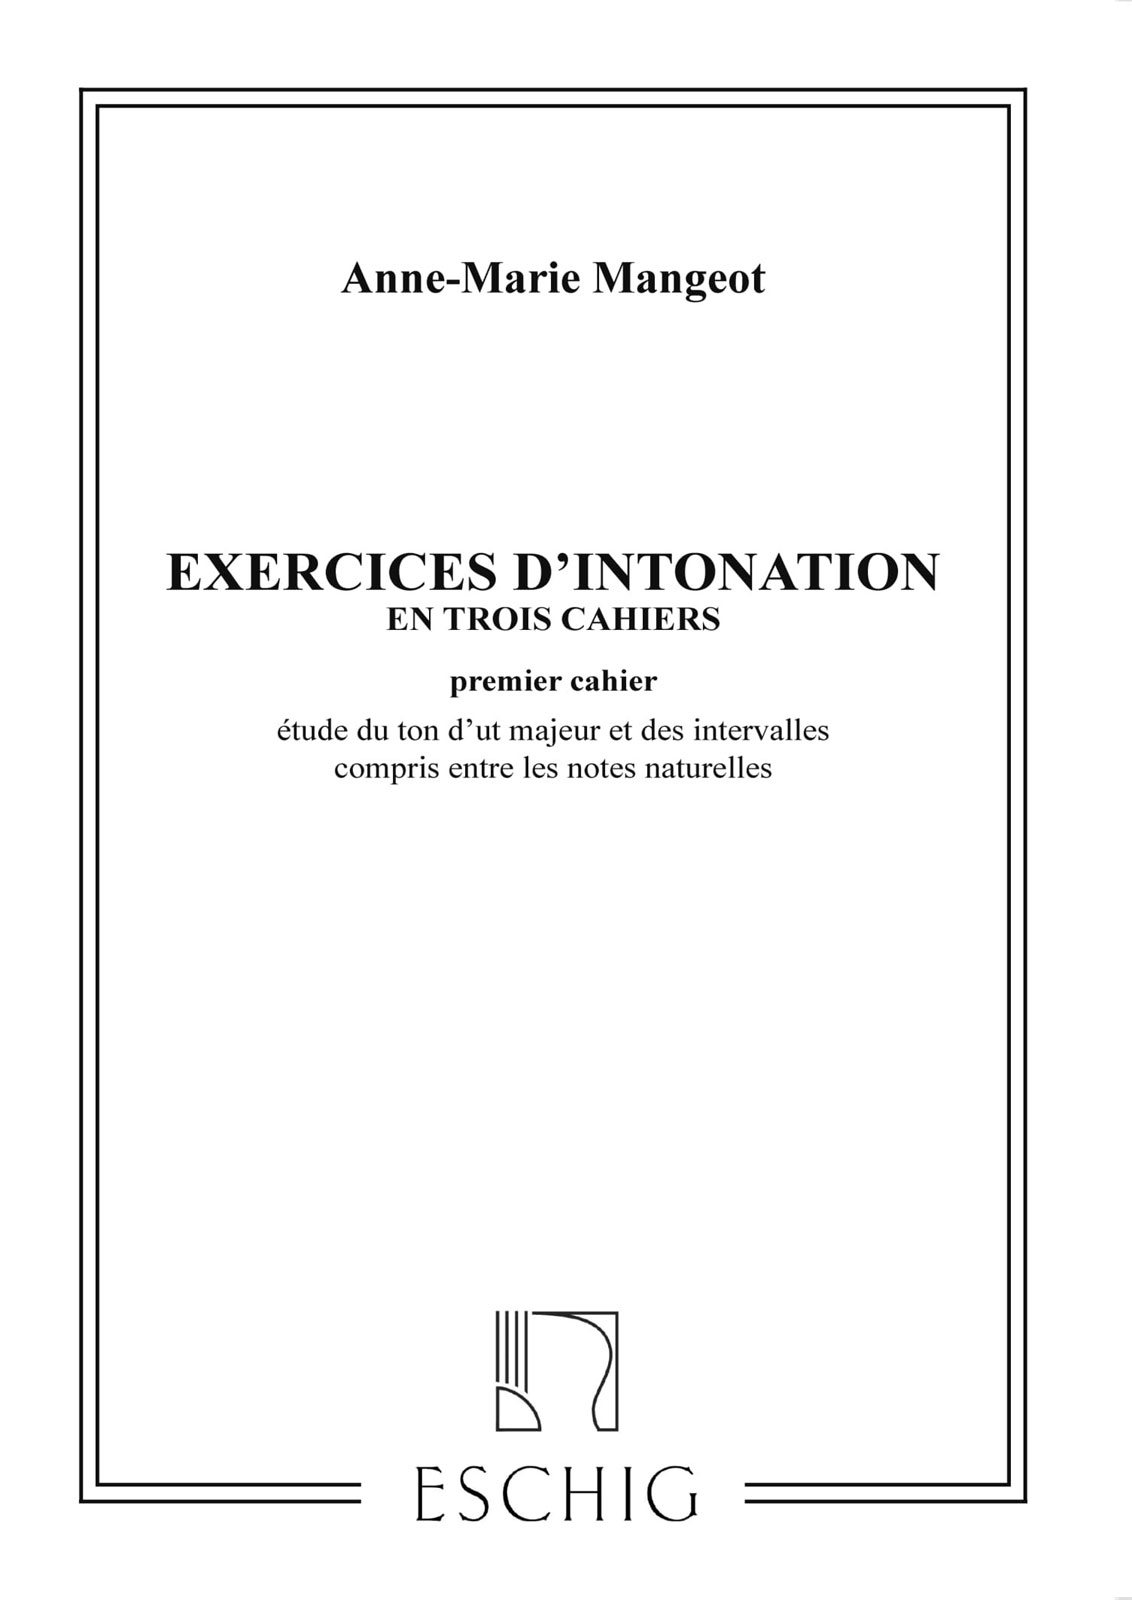 EDITION MAX ESCHIG MANGEOT - EXERCICES D'INTONATION VOL 1